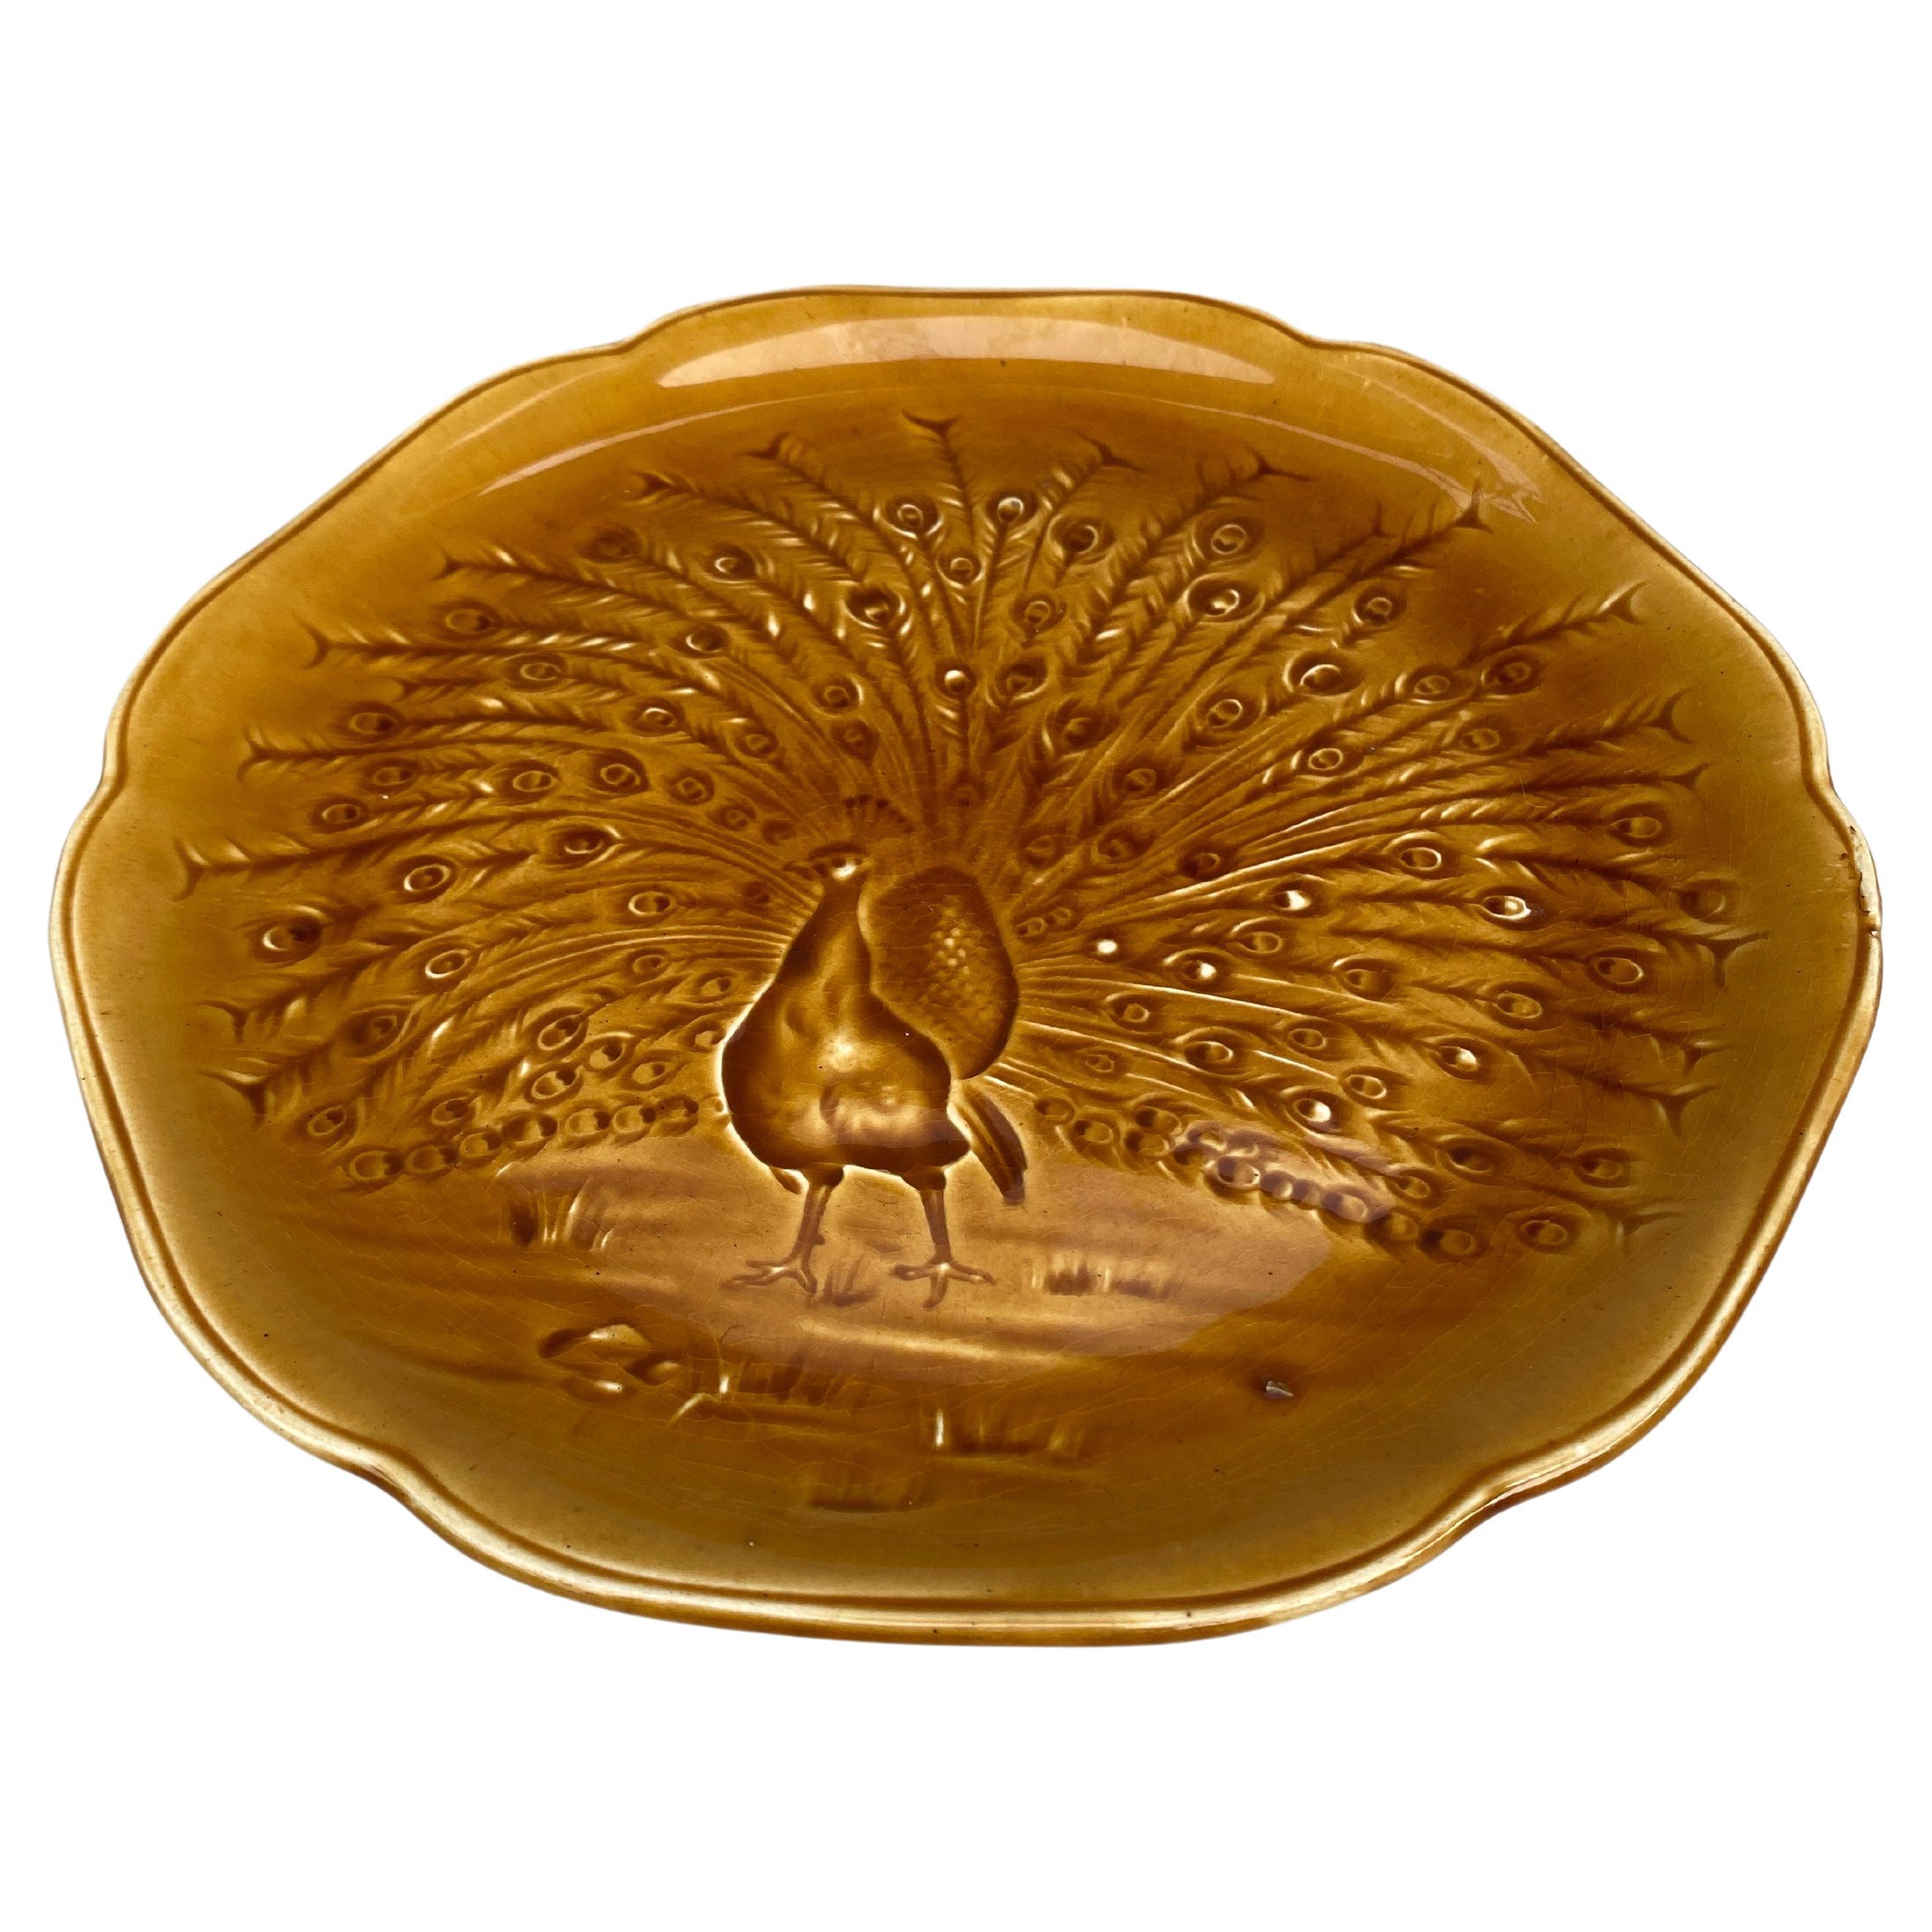 Goldenrold Senf Majolika Teller mit einem Pfau signiert Hippolyte Boulenger Choisy-le-Roi, um 1890.
Die Manufaktur von Choisy-le-Roi war eine der wichtigsten Manufakturen am Ende des 19. Jahrhunderts, die sehr hochwertige Keramik aller Art wie